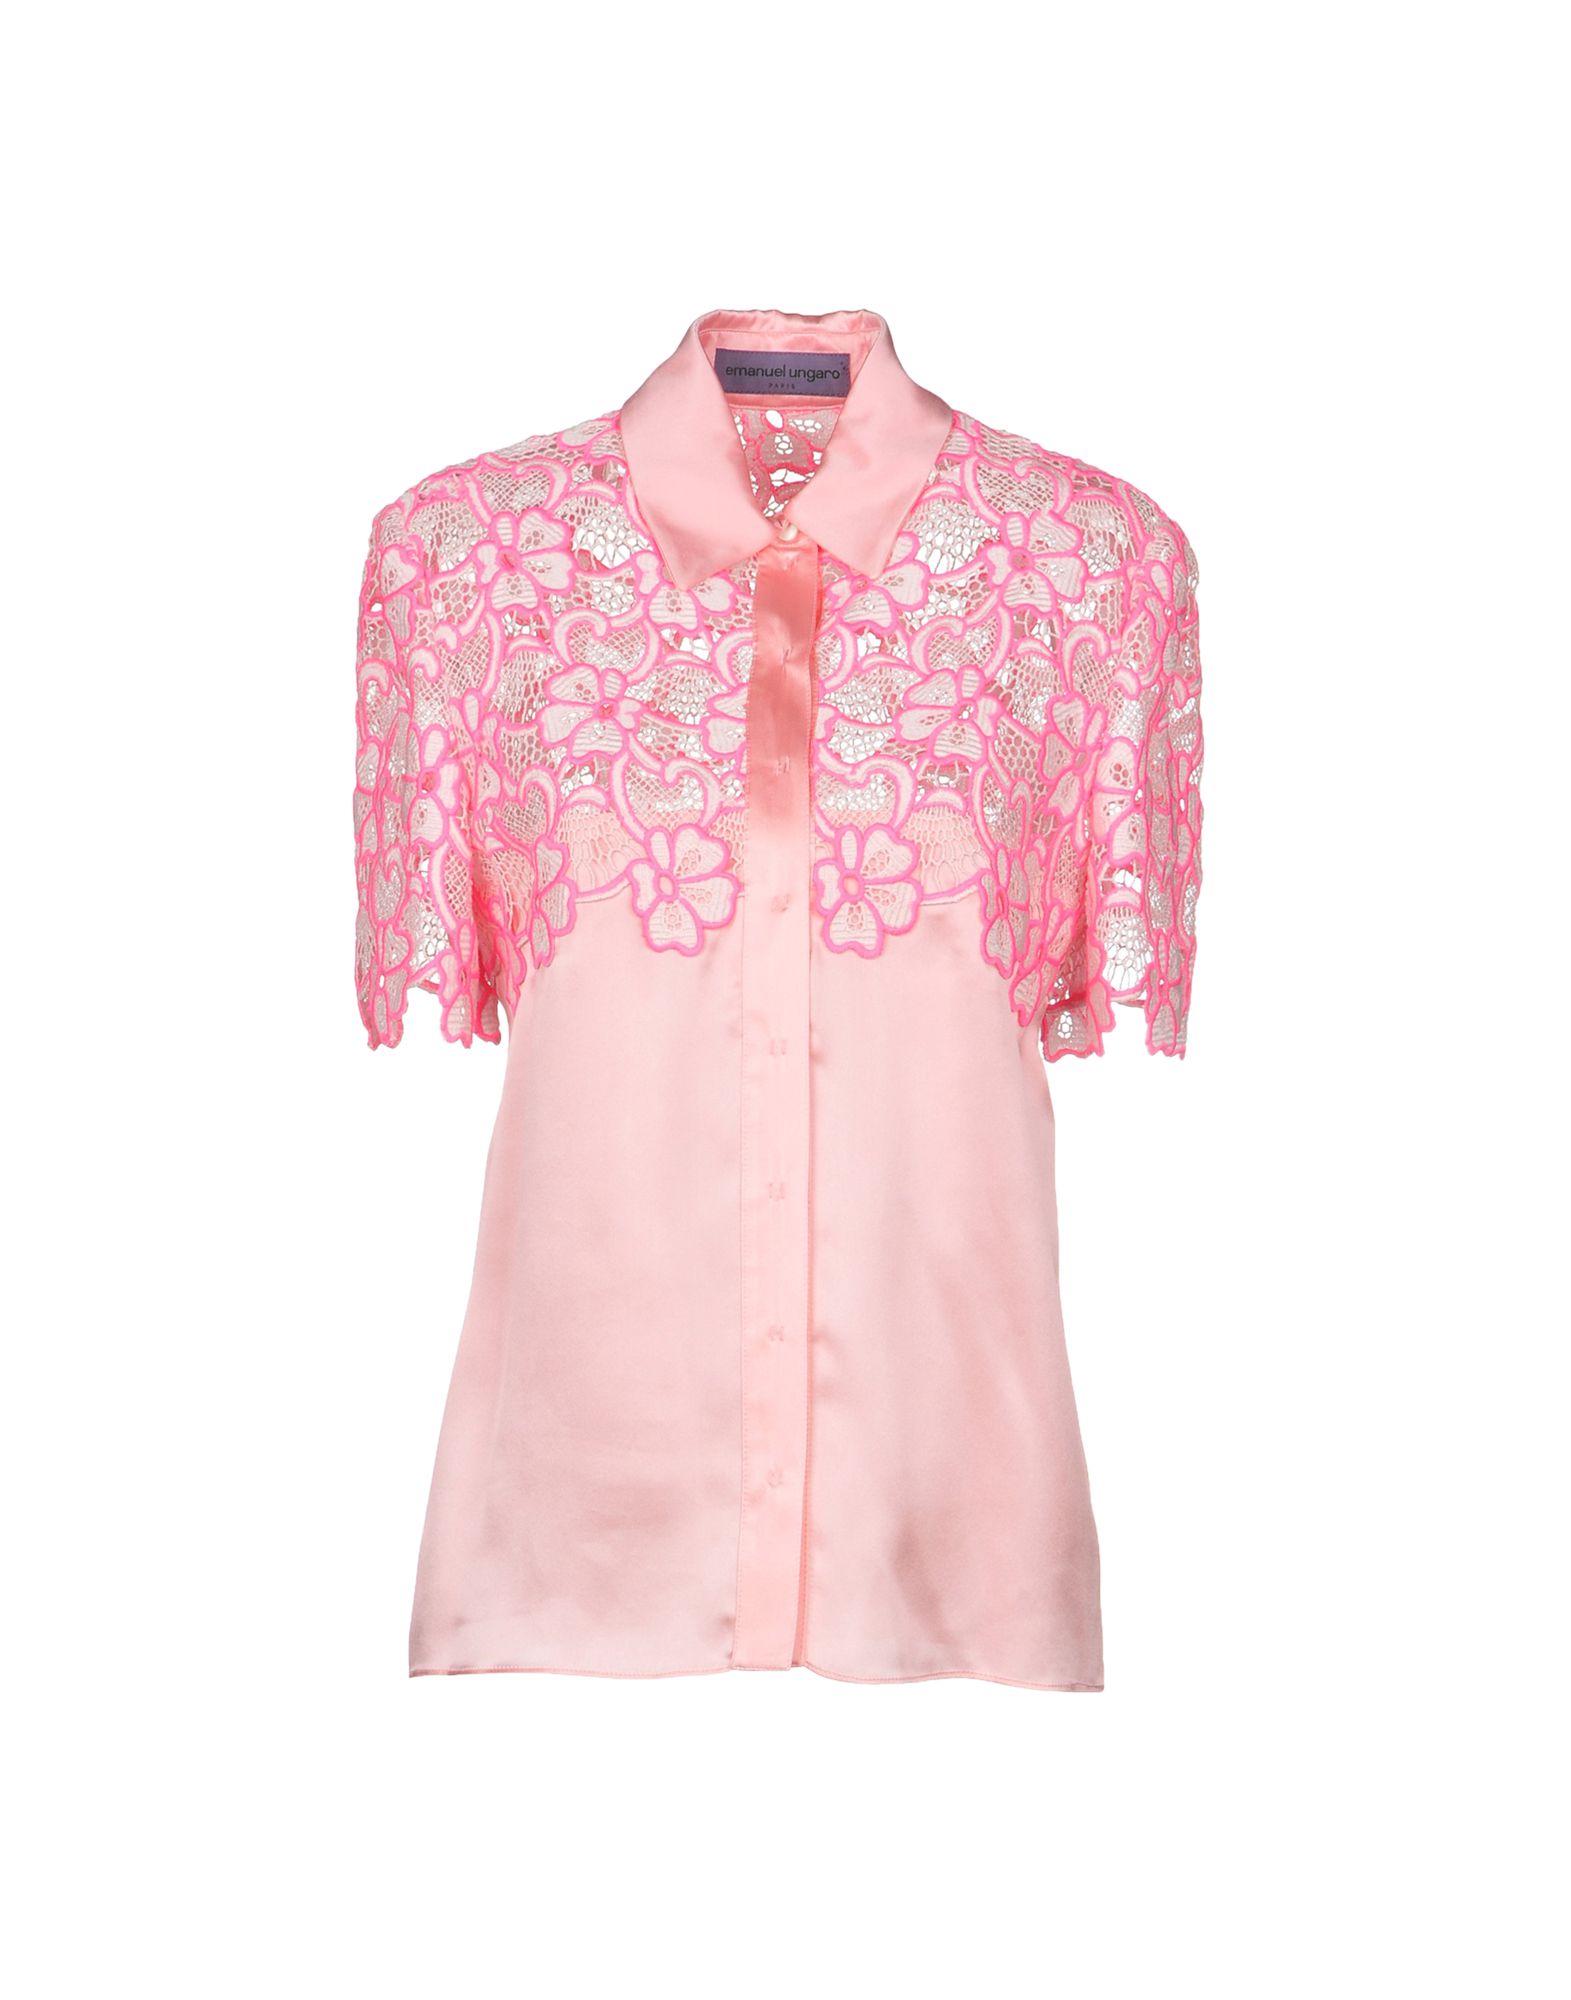 EMANUEL UNGARO Floral shirts & blouses,38638086LQ 4